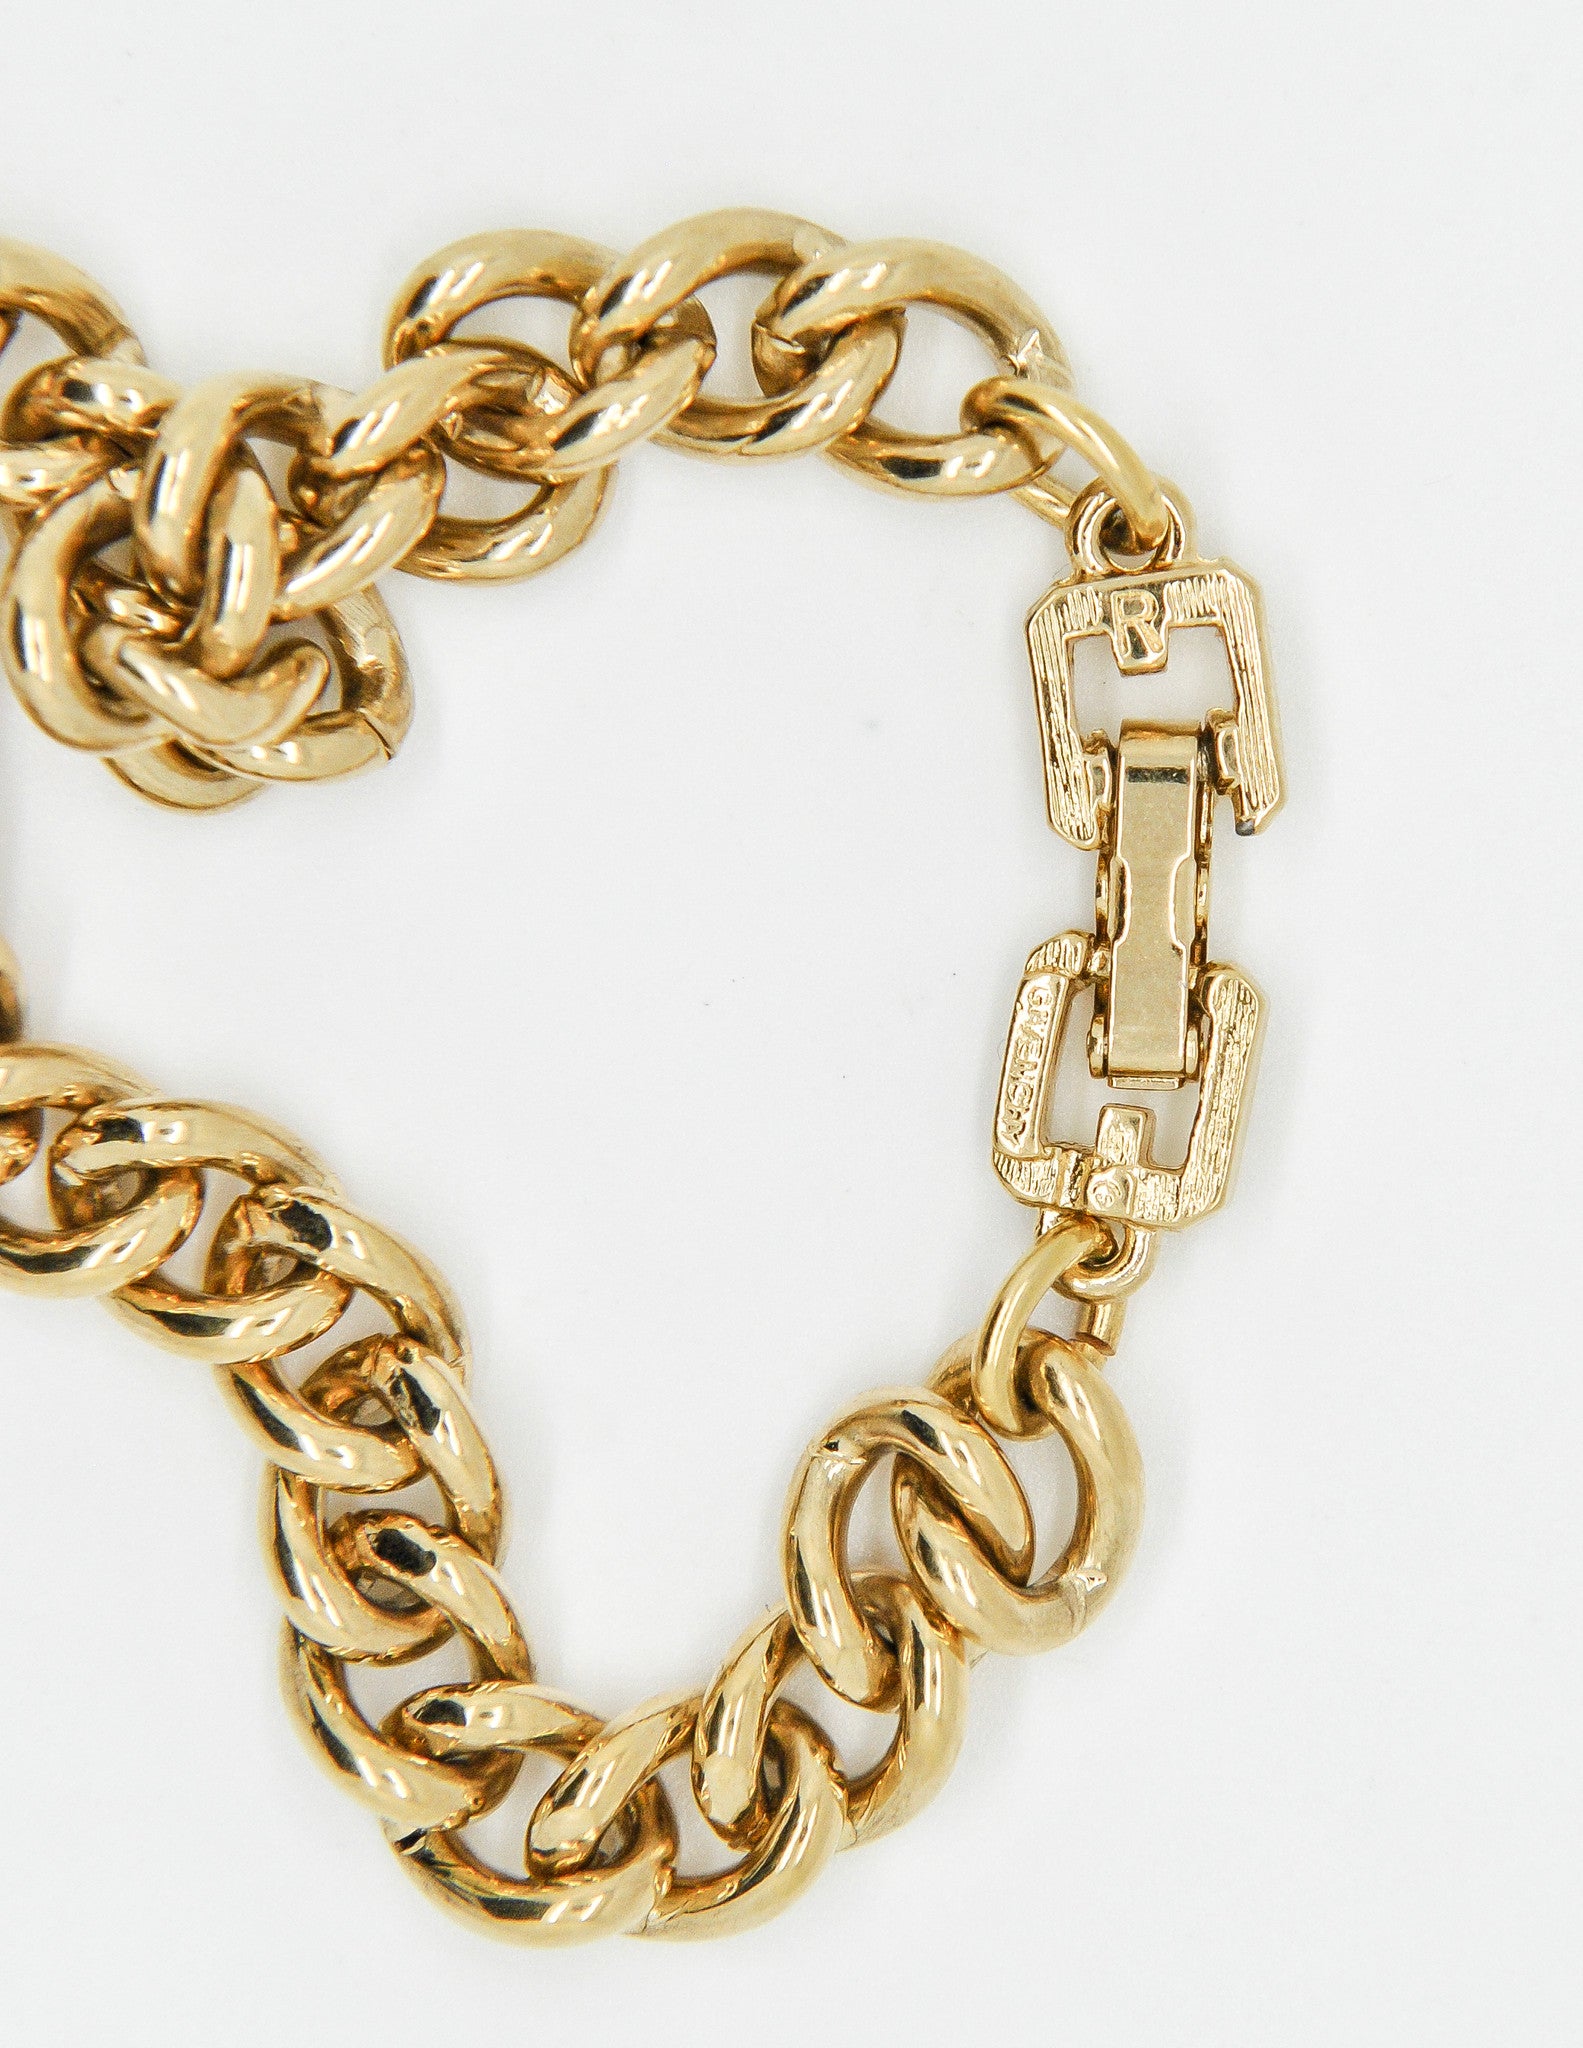 gold givenchy bracelet